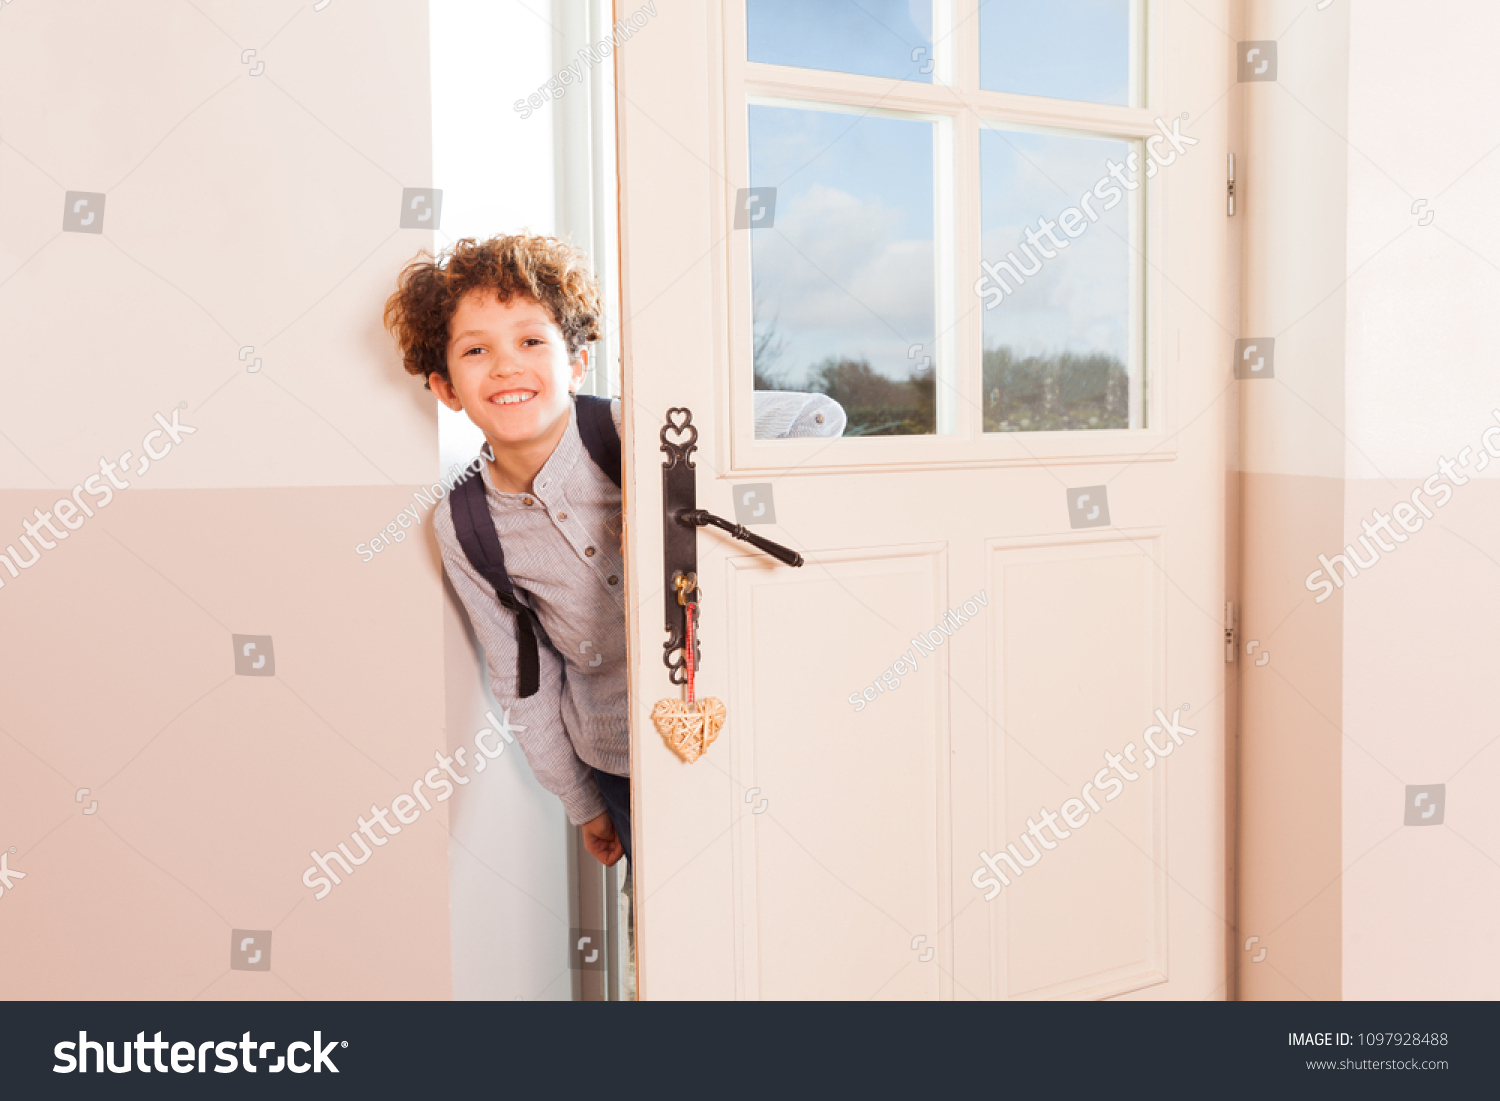 Мальчик и дверь открылась. Двери в школе. Ребенок пришел из школы. Мальчик у двери. Дверь для детей.